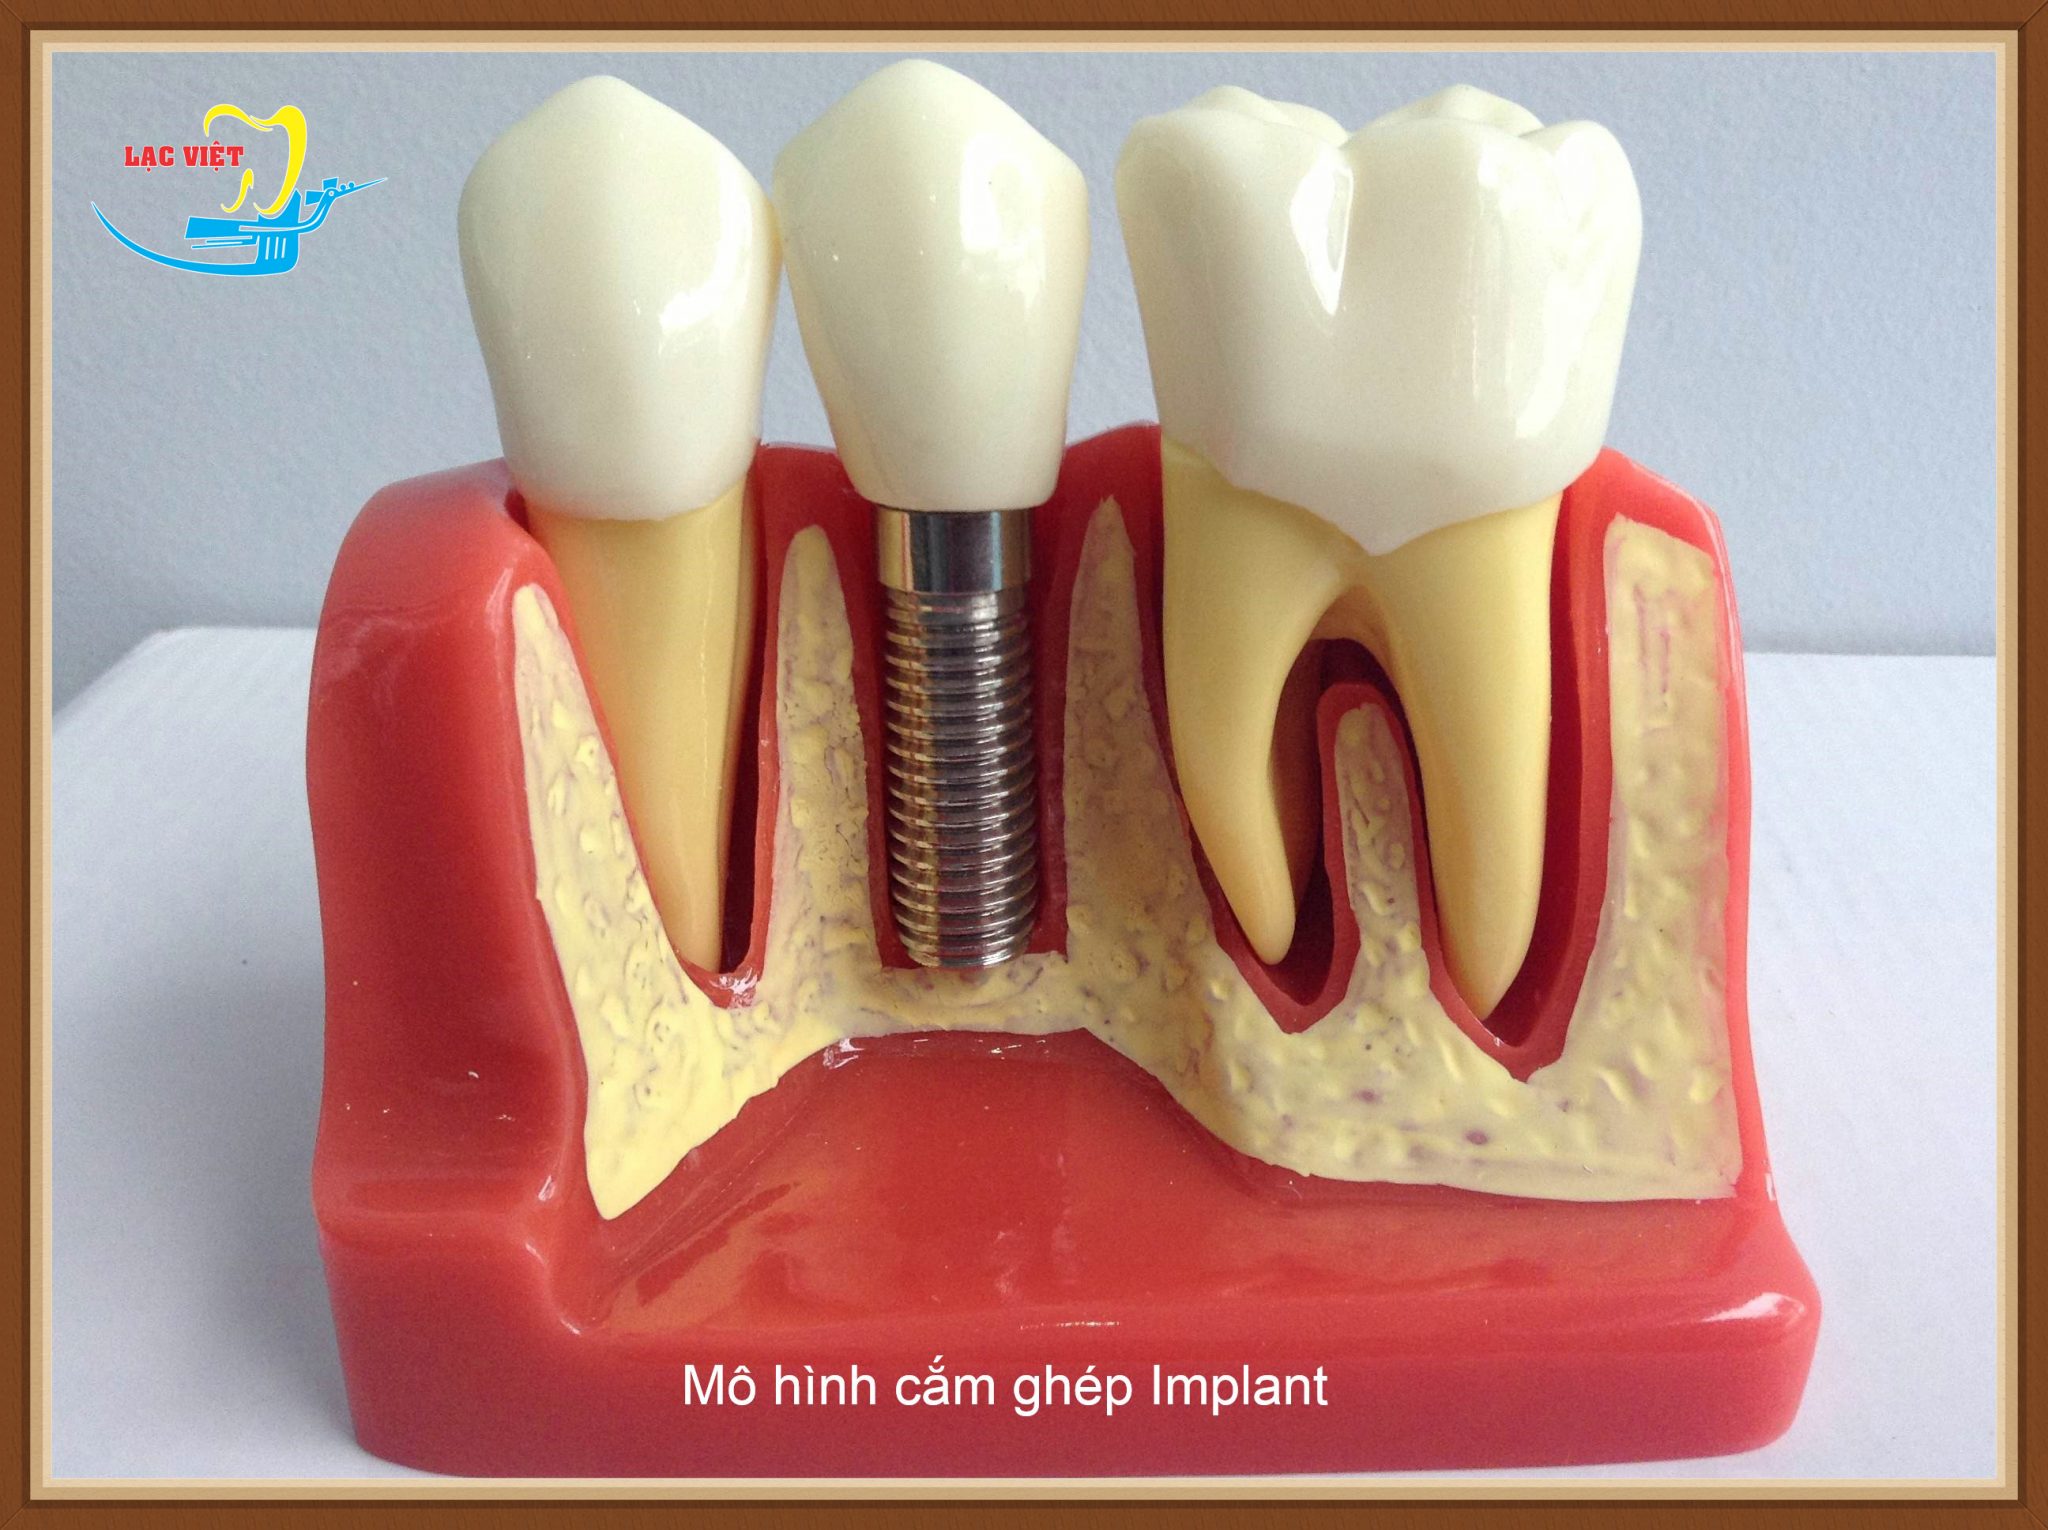 Thực hư vấn đề "Làm răng implant tại sao lại đắt"